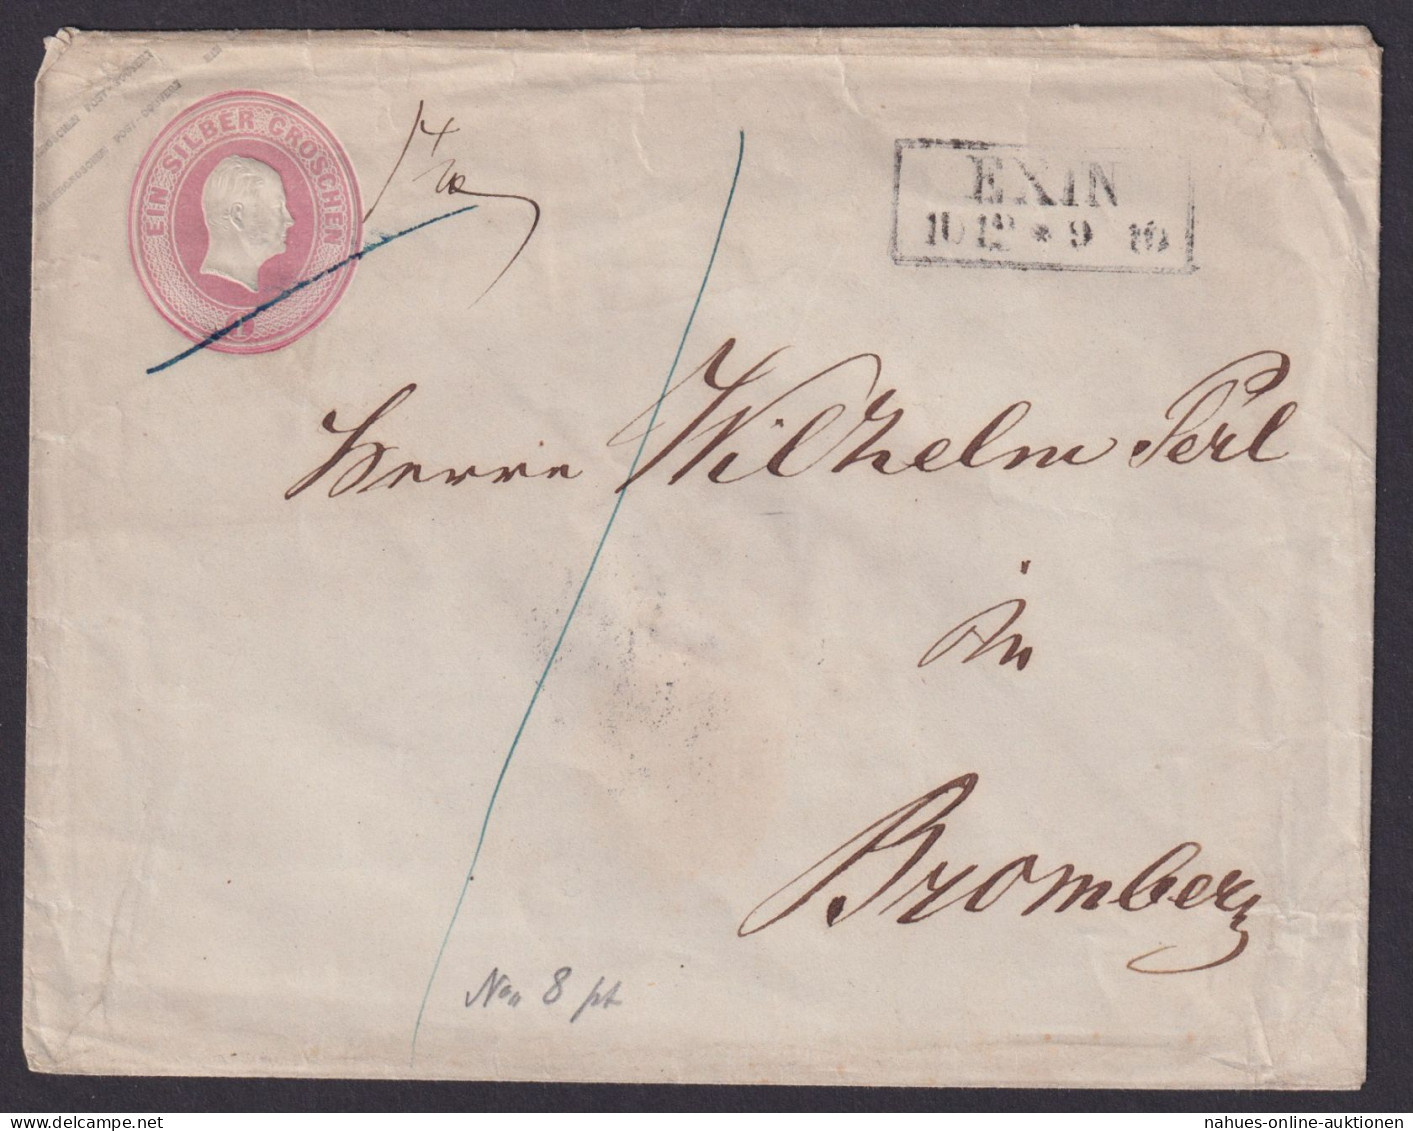 Altdeutschland Preussen Brief Ganzsache 1 Sgr. R" EXIN Posen Nach Bromberg - Enteros Postales